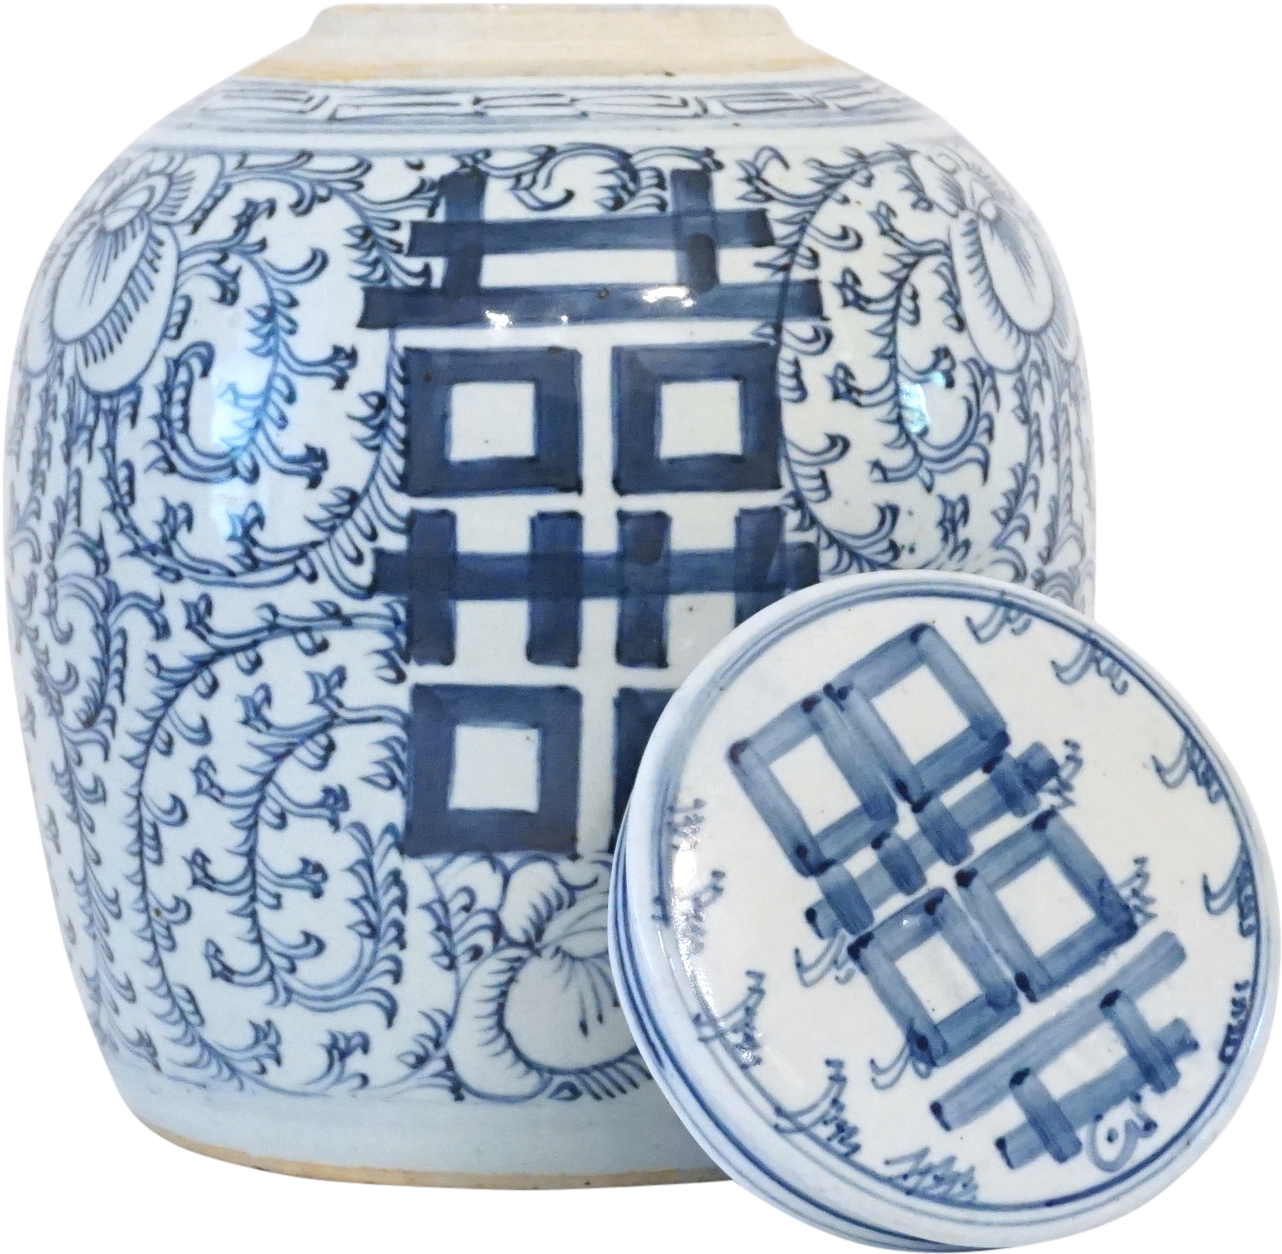 Frasco de cerâmica dupla felicidade, porcelana azul e branca